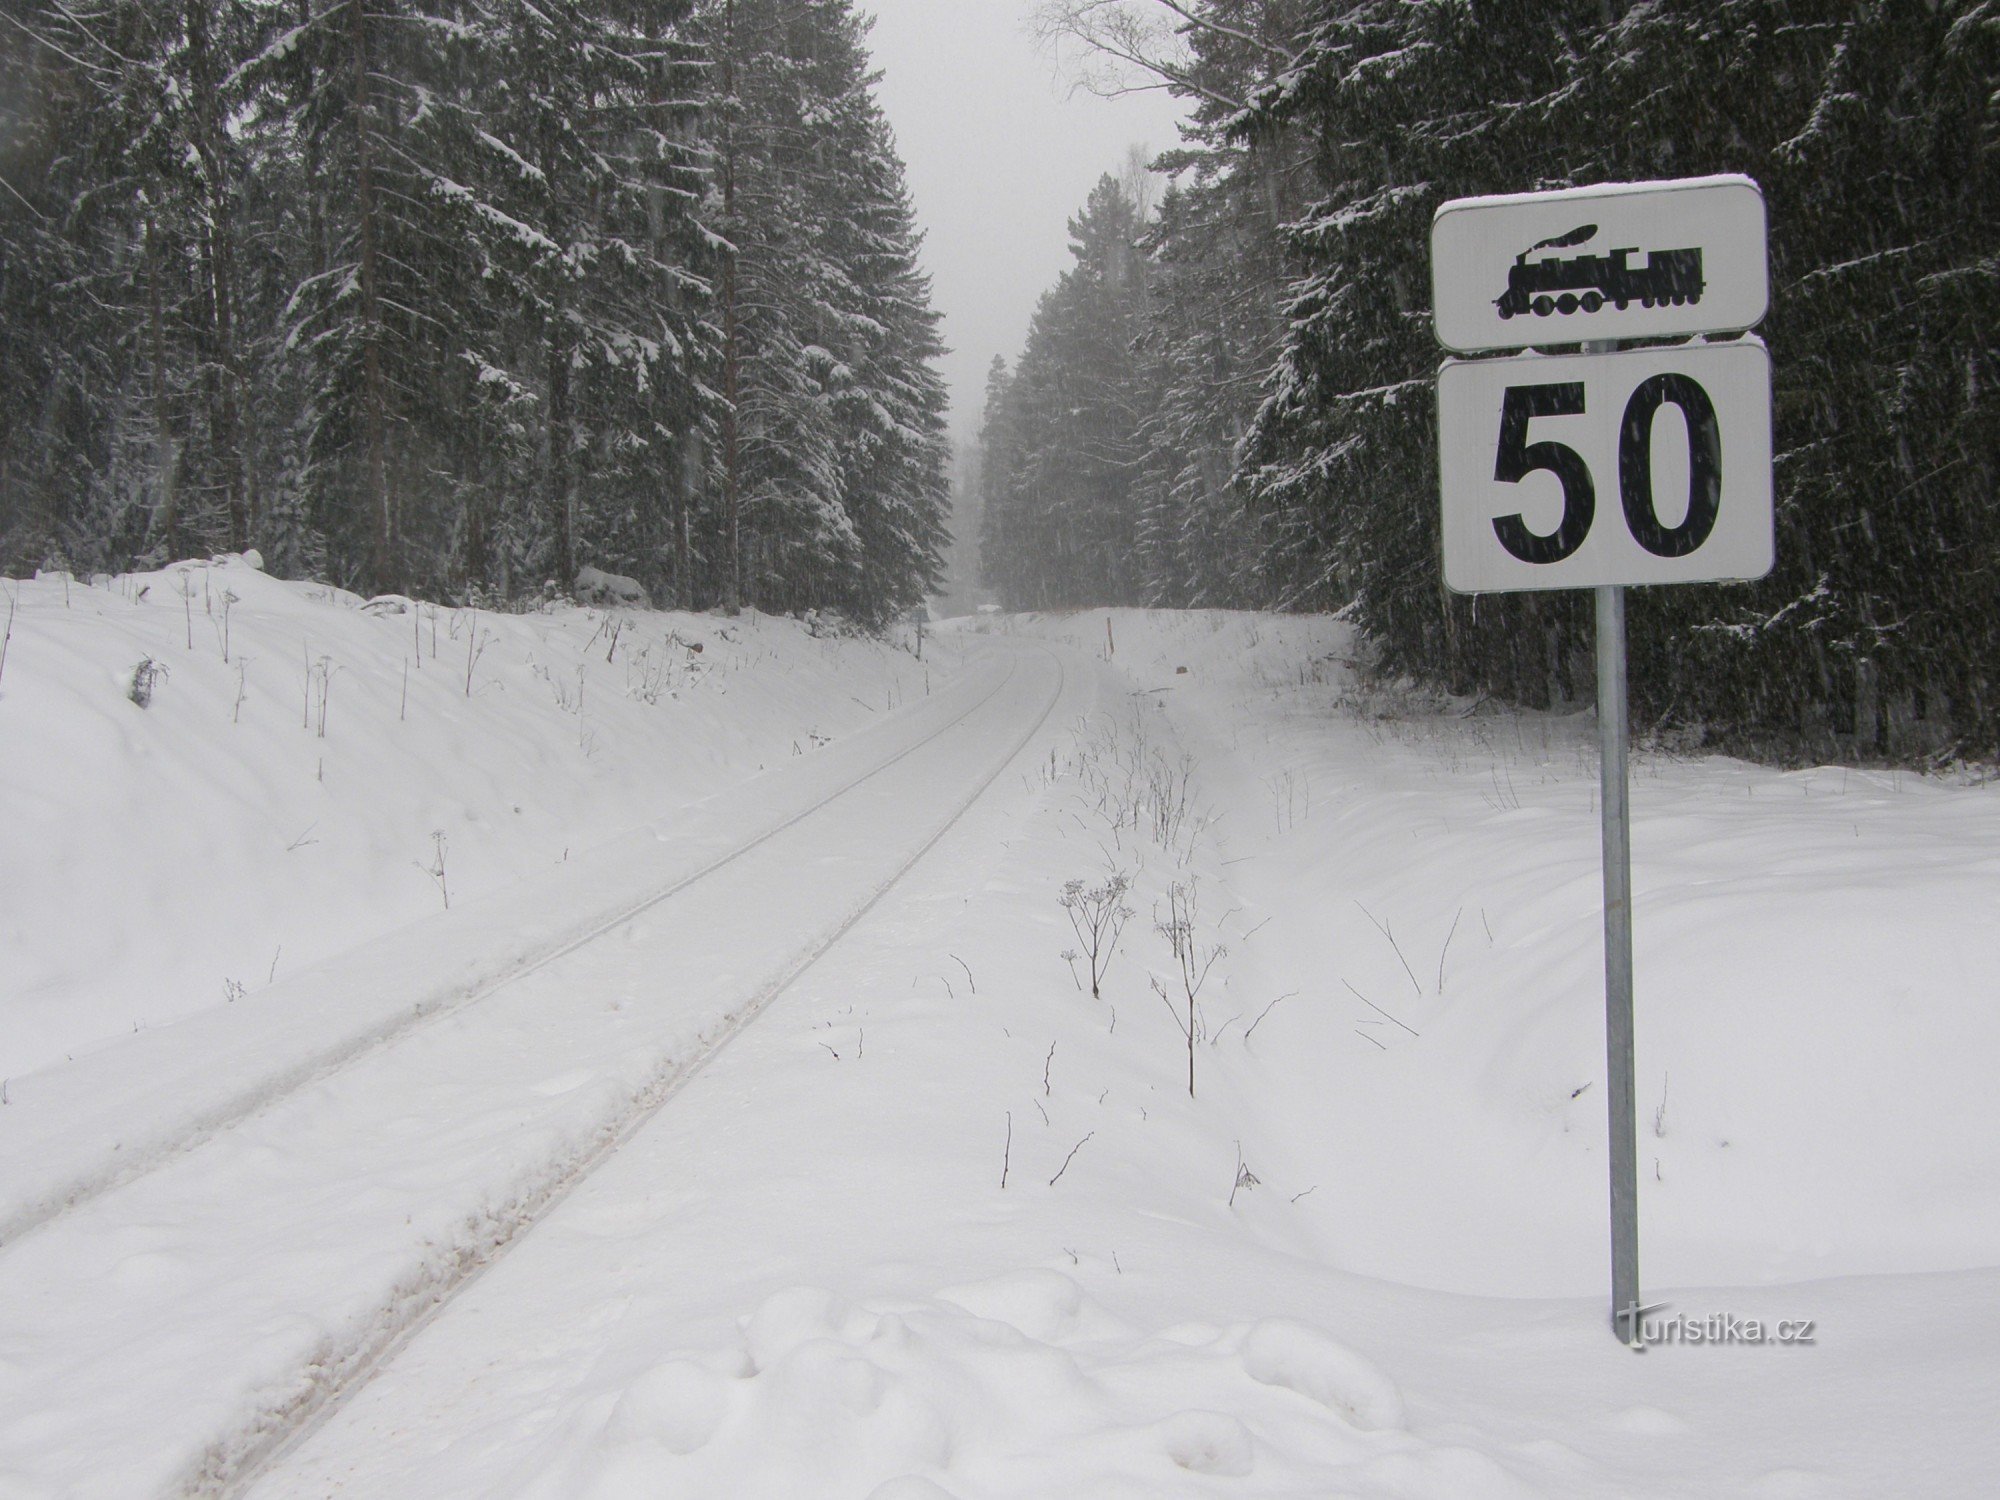 Οι διαδρομές κατευθύνονται μέσα από το χιόνι προς τα σύνορα της Βαυαρίας